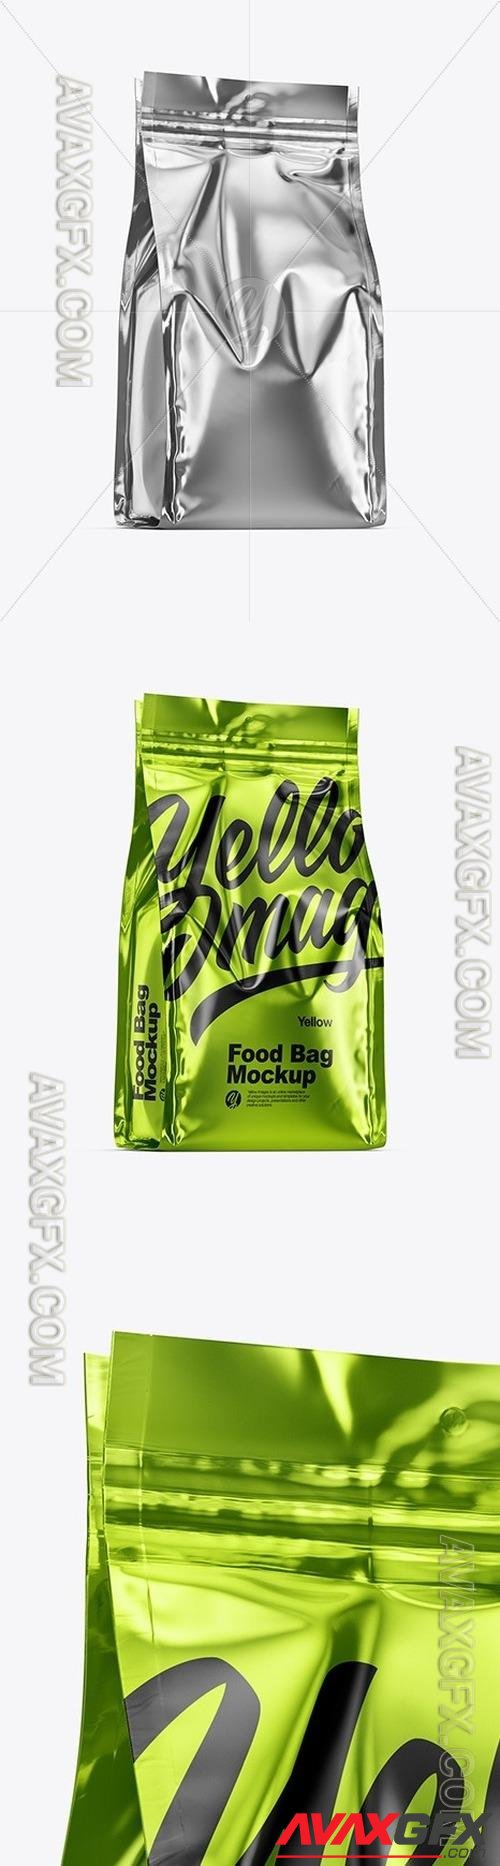 Metallic Food Bag Mockup 50189 TIF